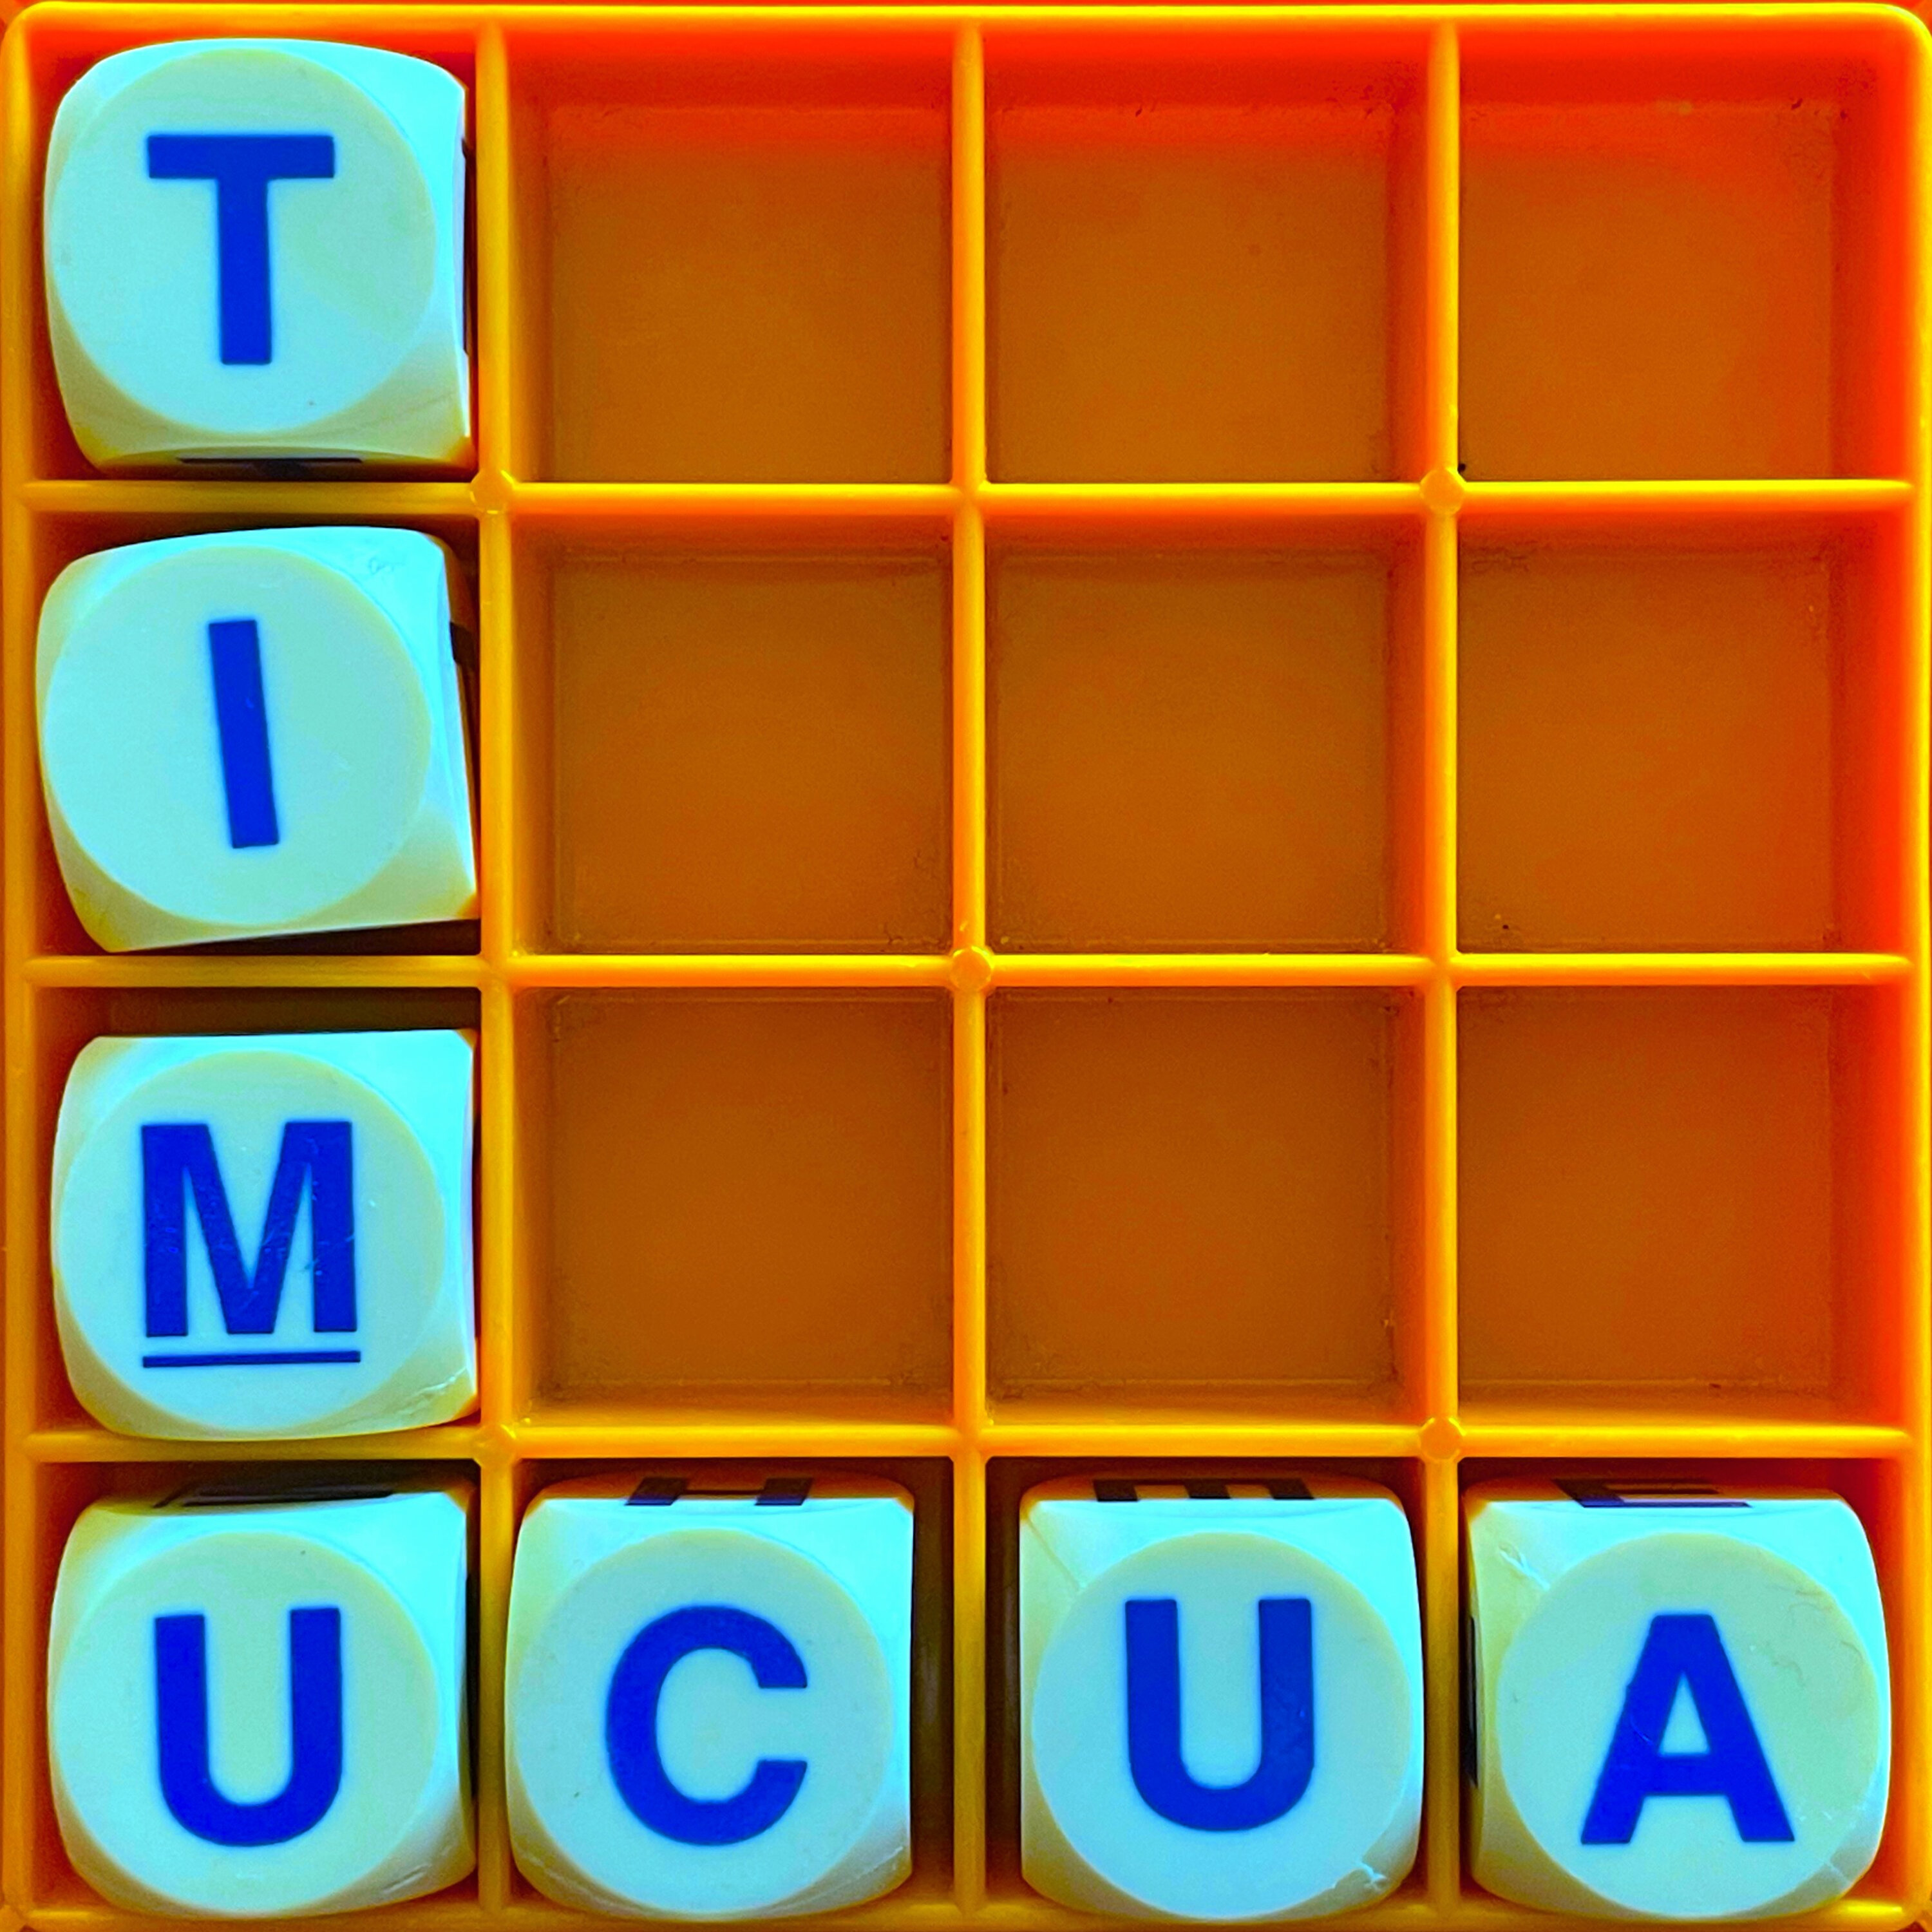 Thumbnail for "183. Timucua".